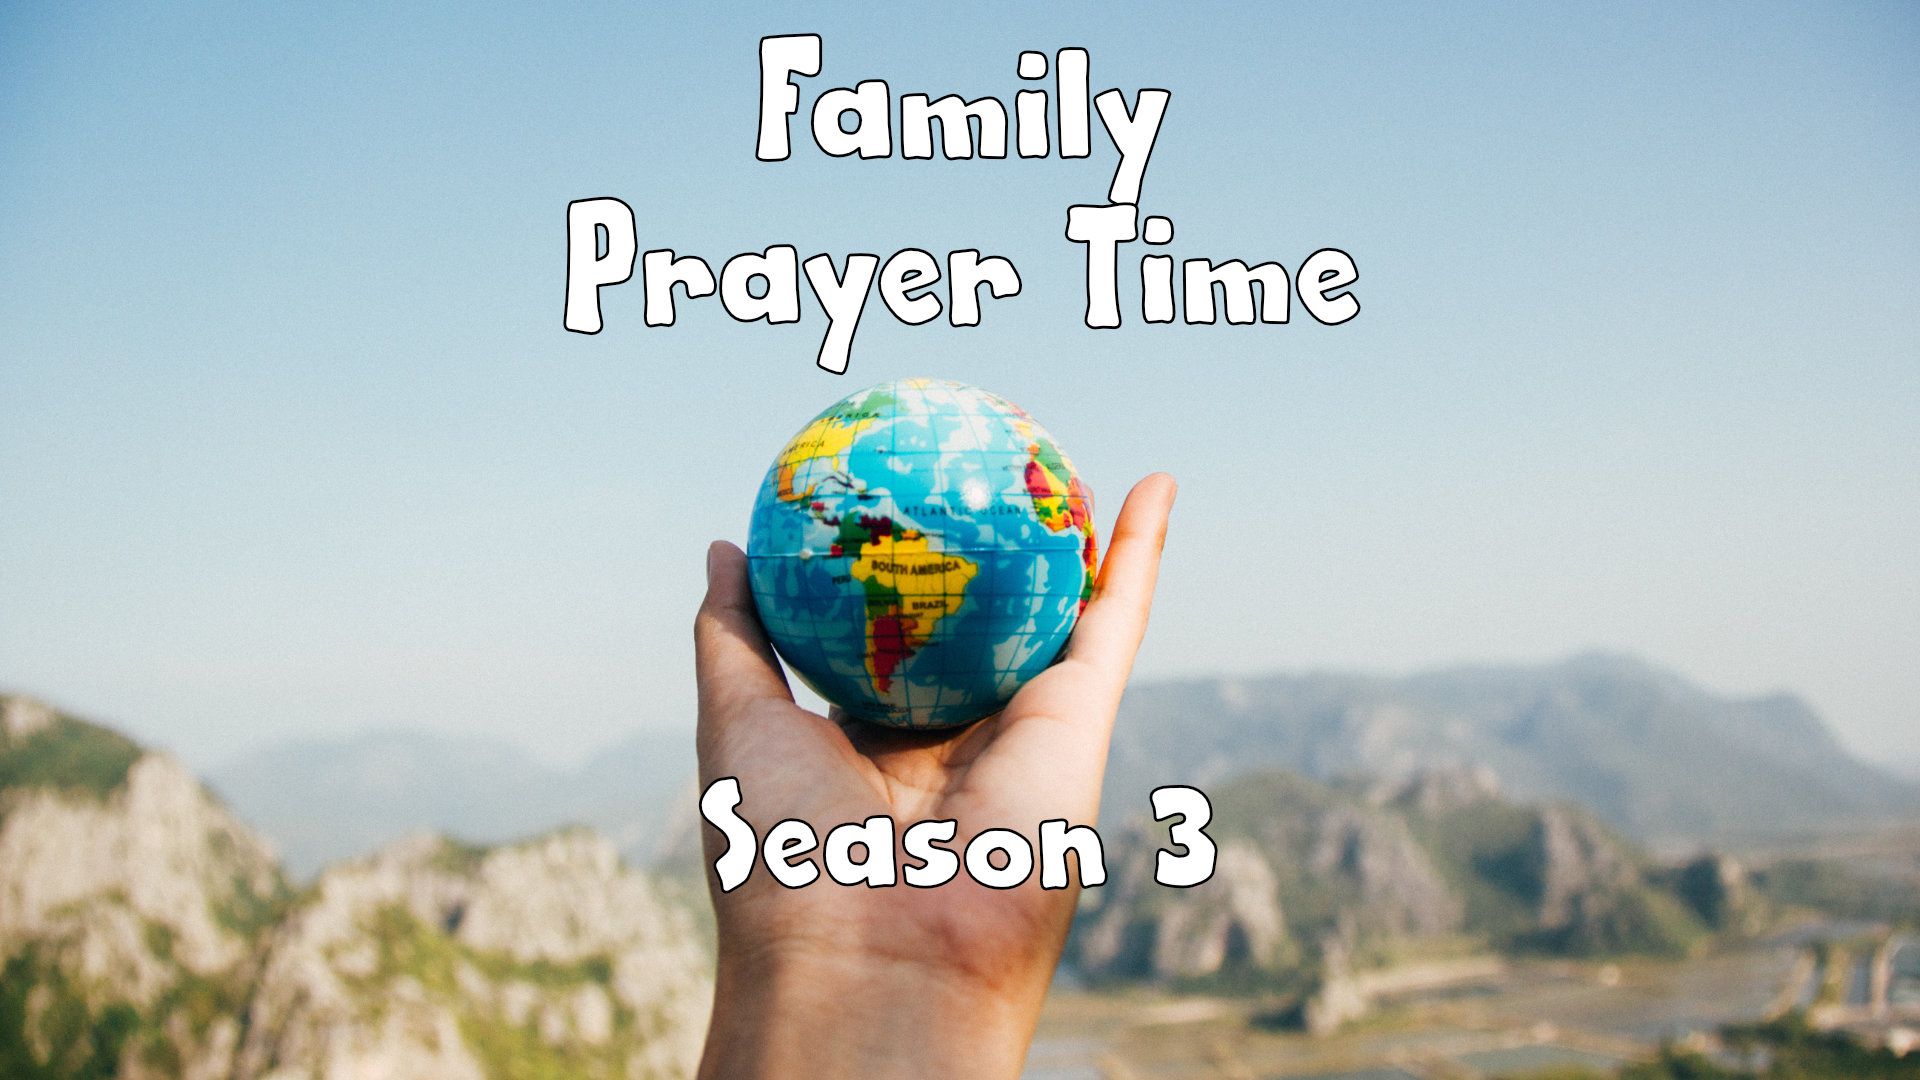 S3, Family Prayer Time